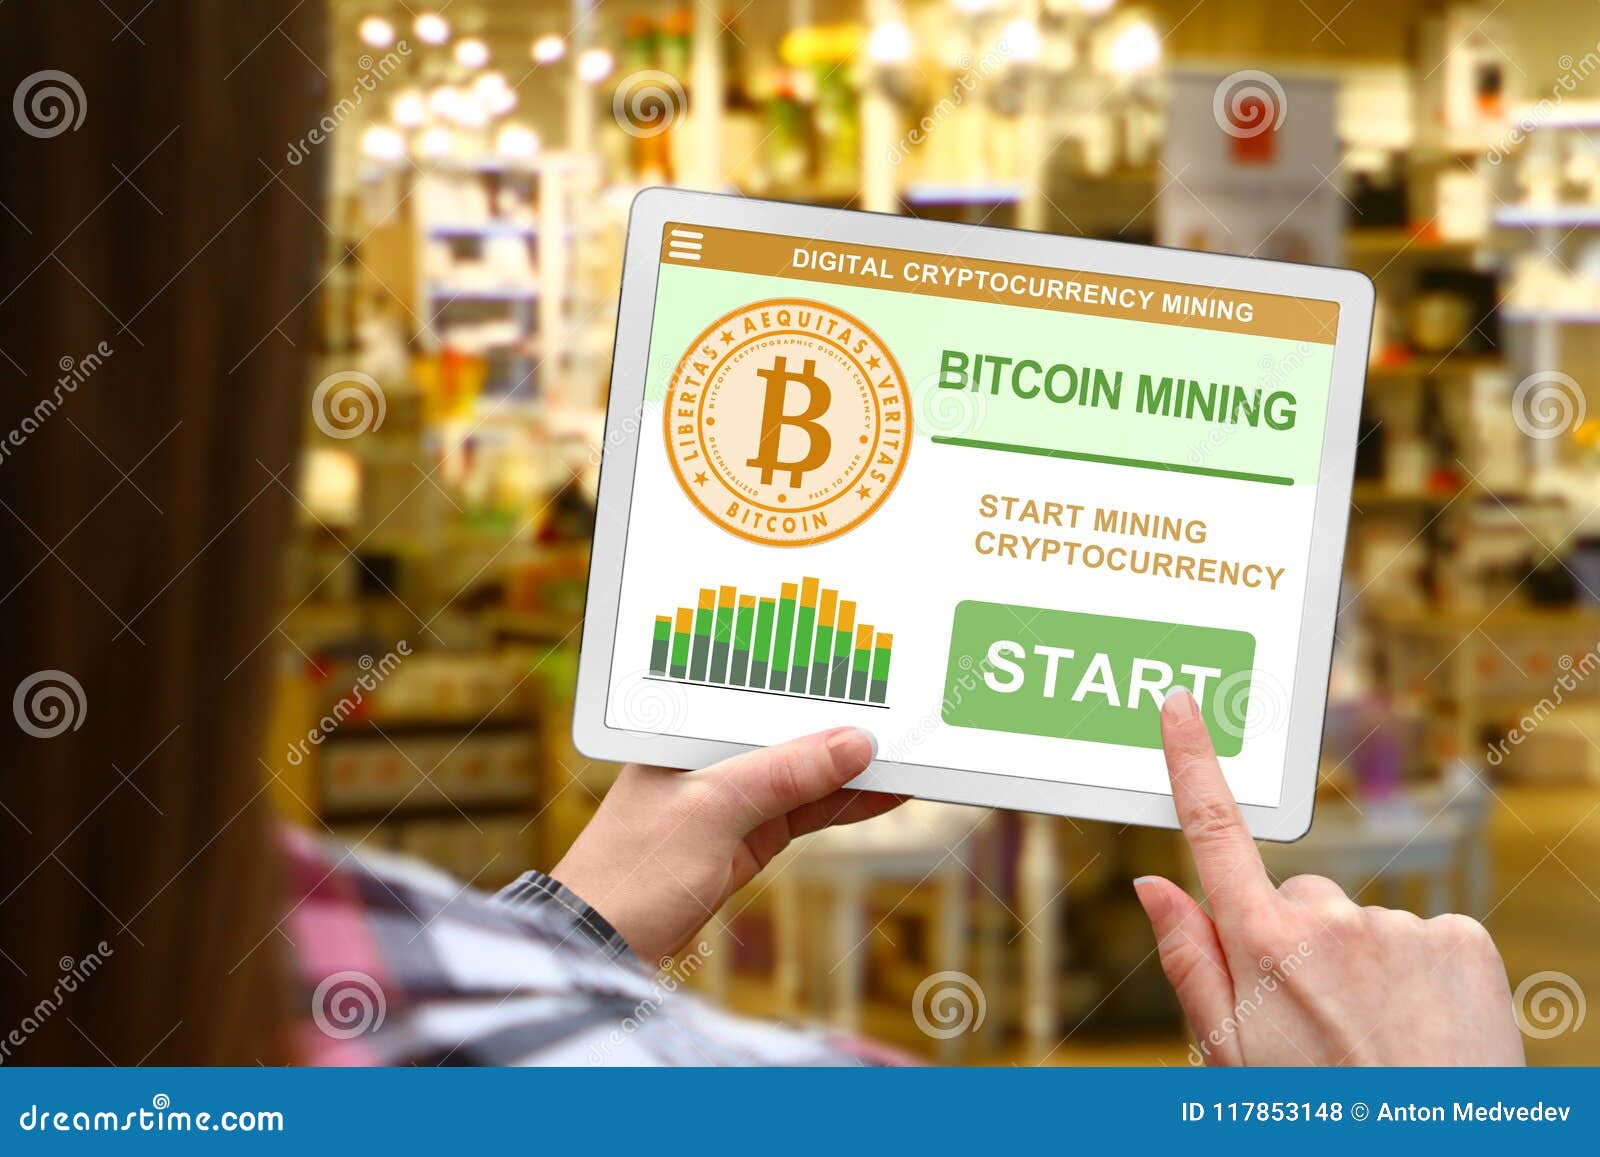 bitcoin mining shop